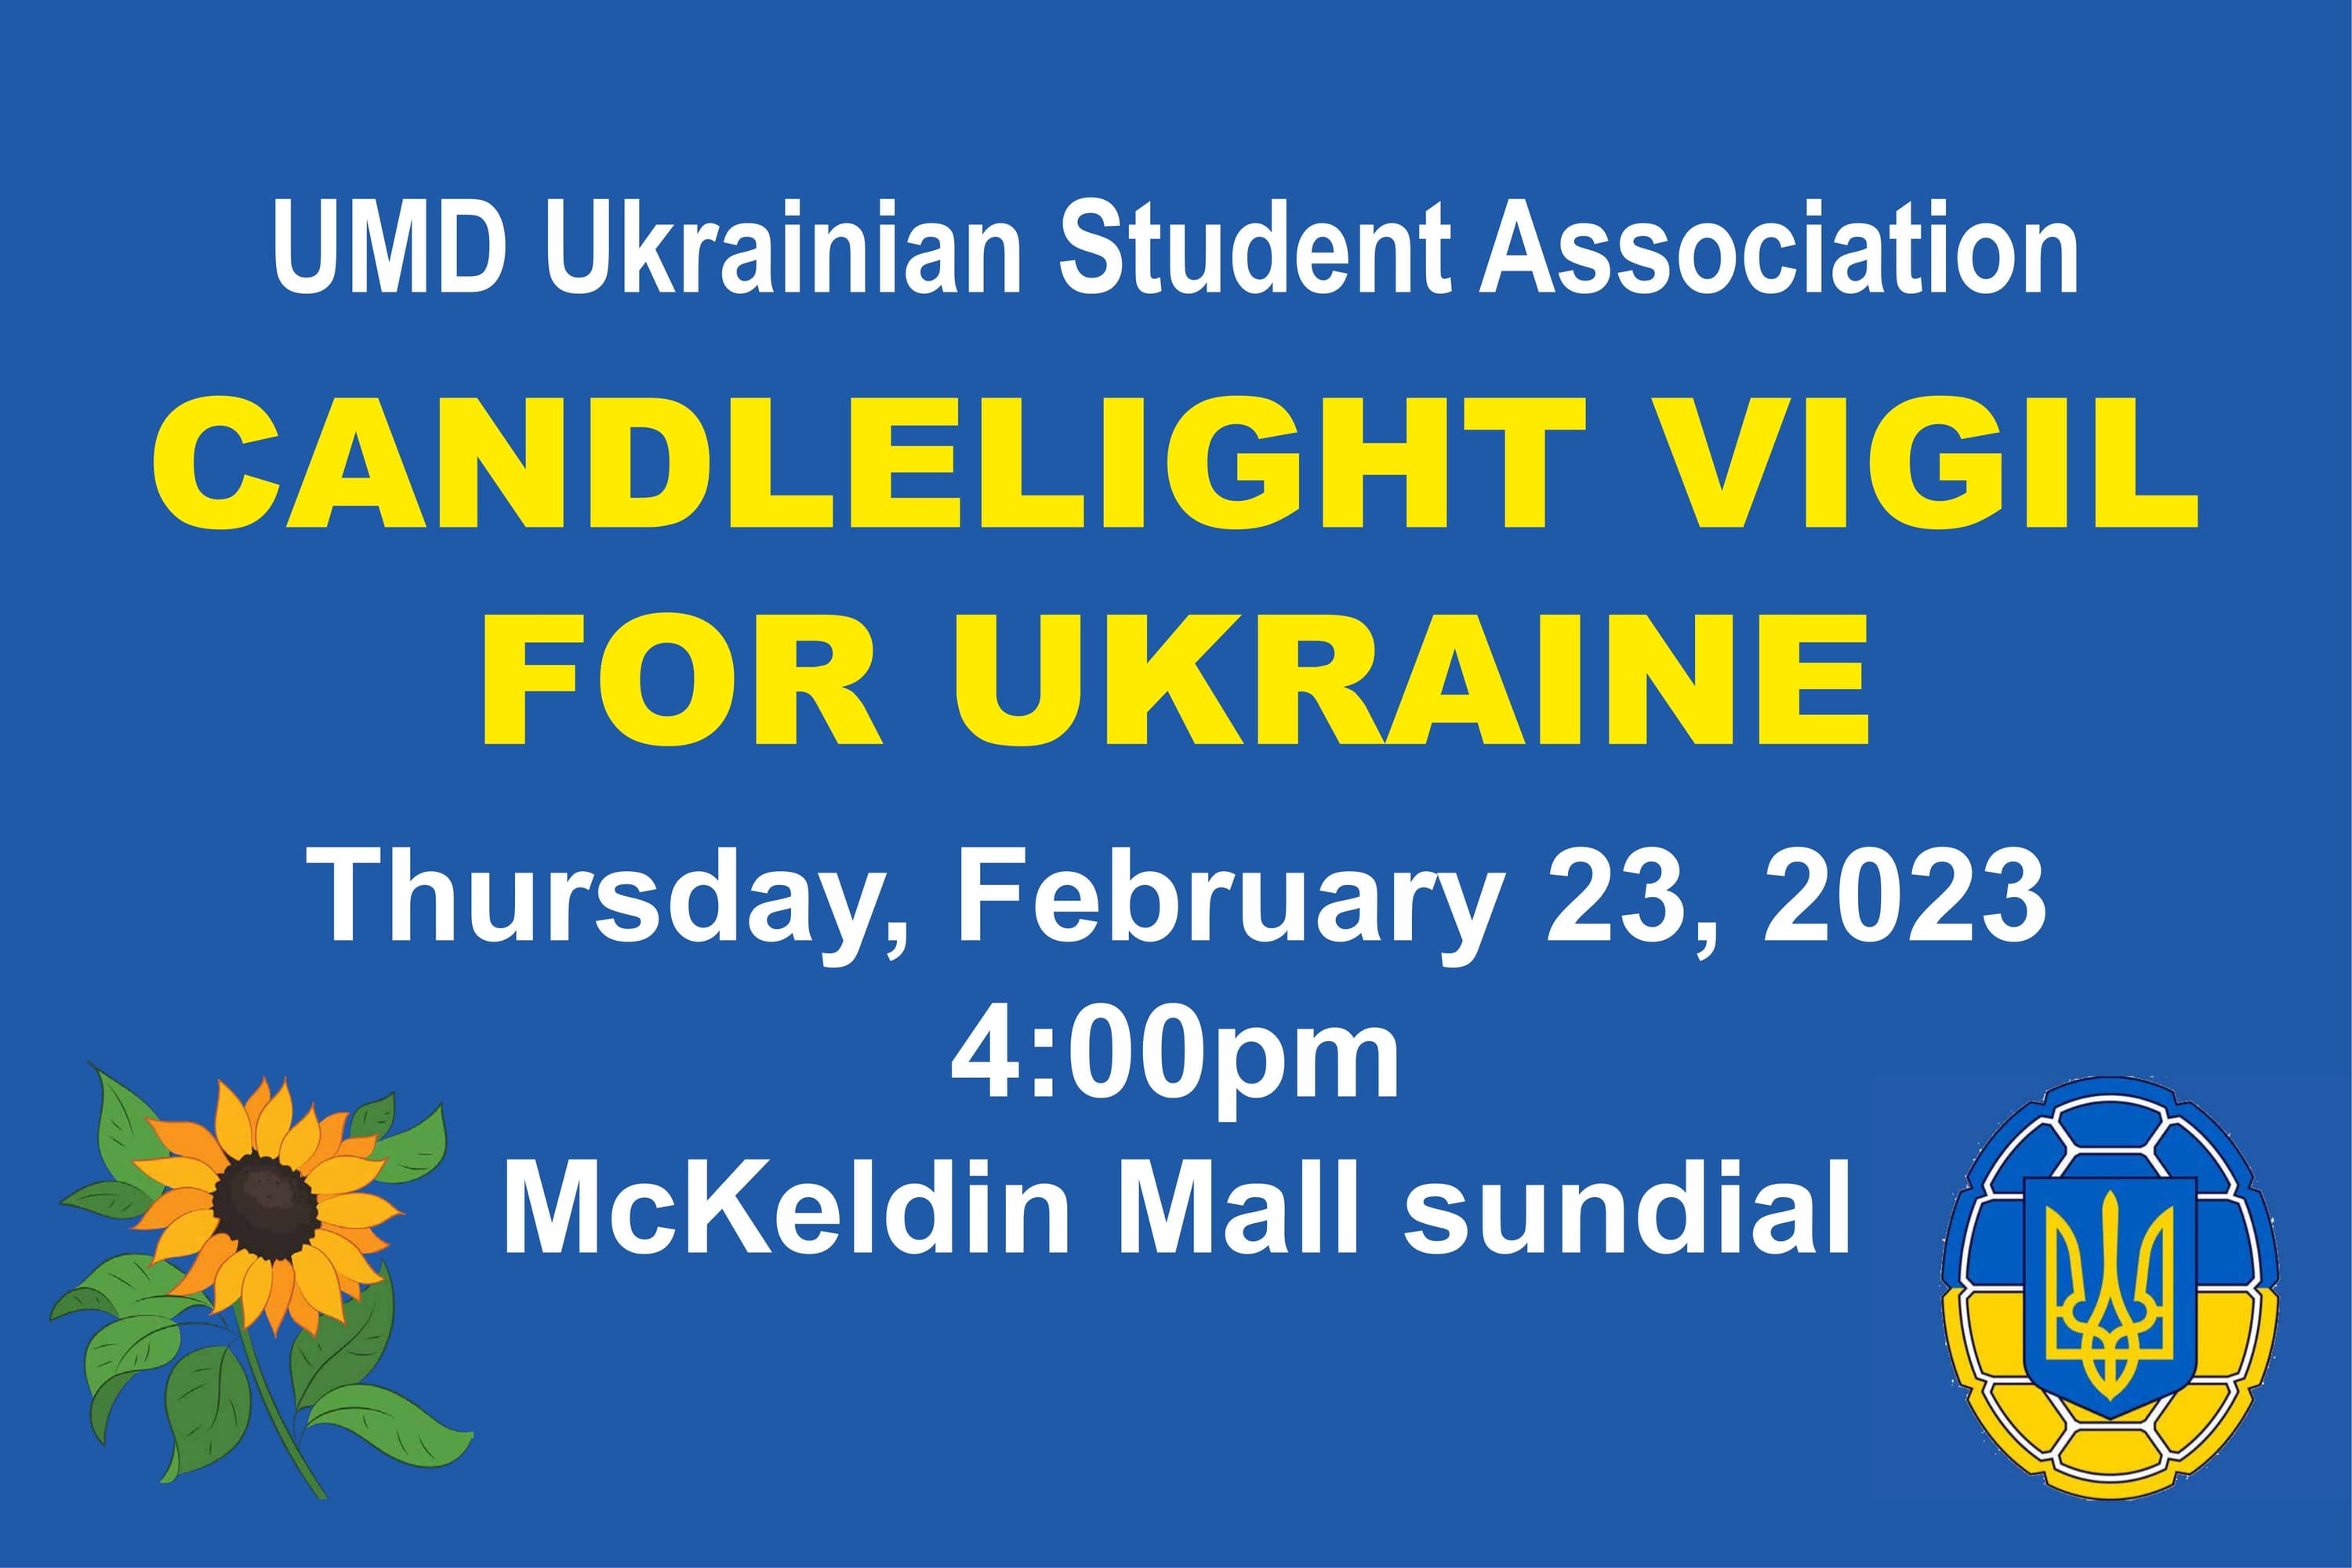 Vigil for Ukraine